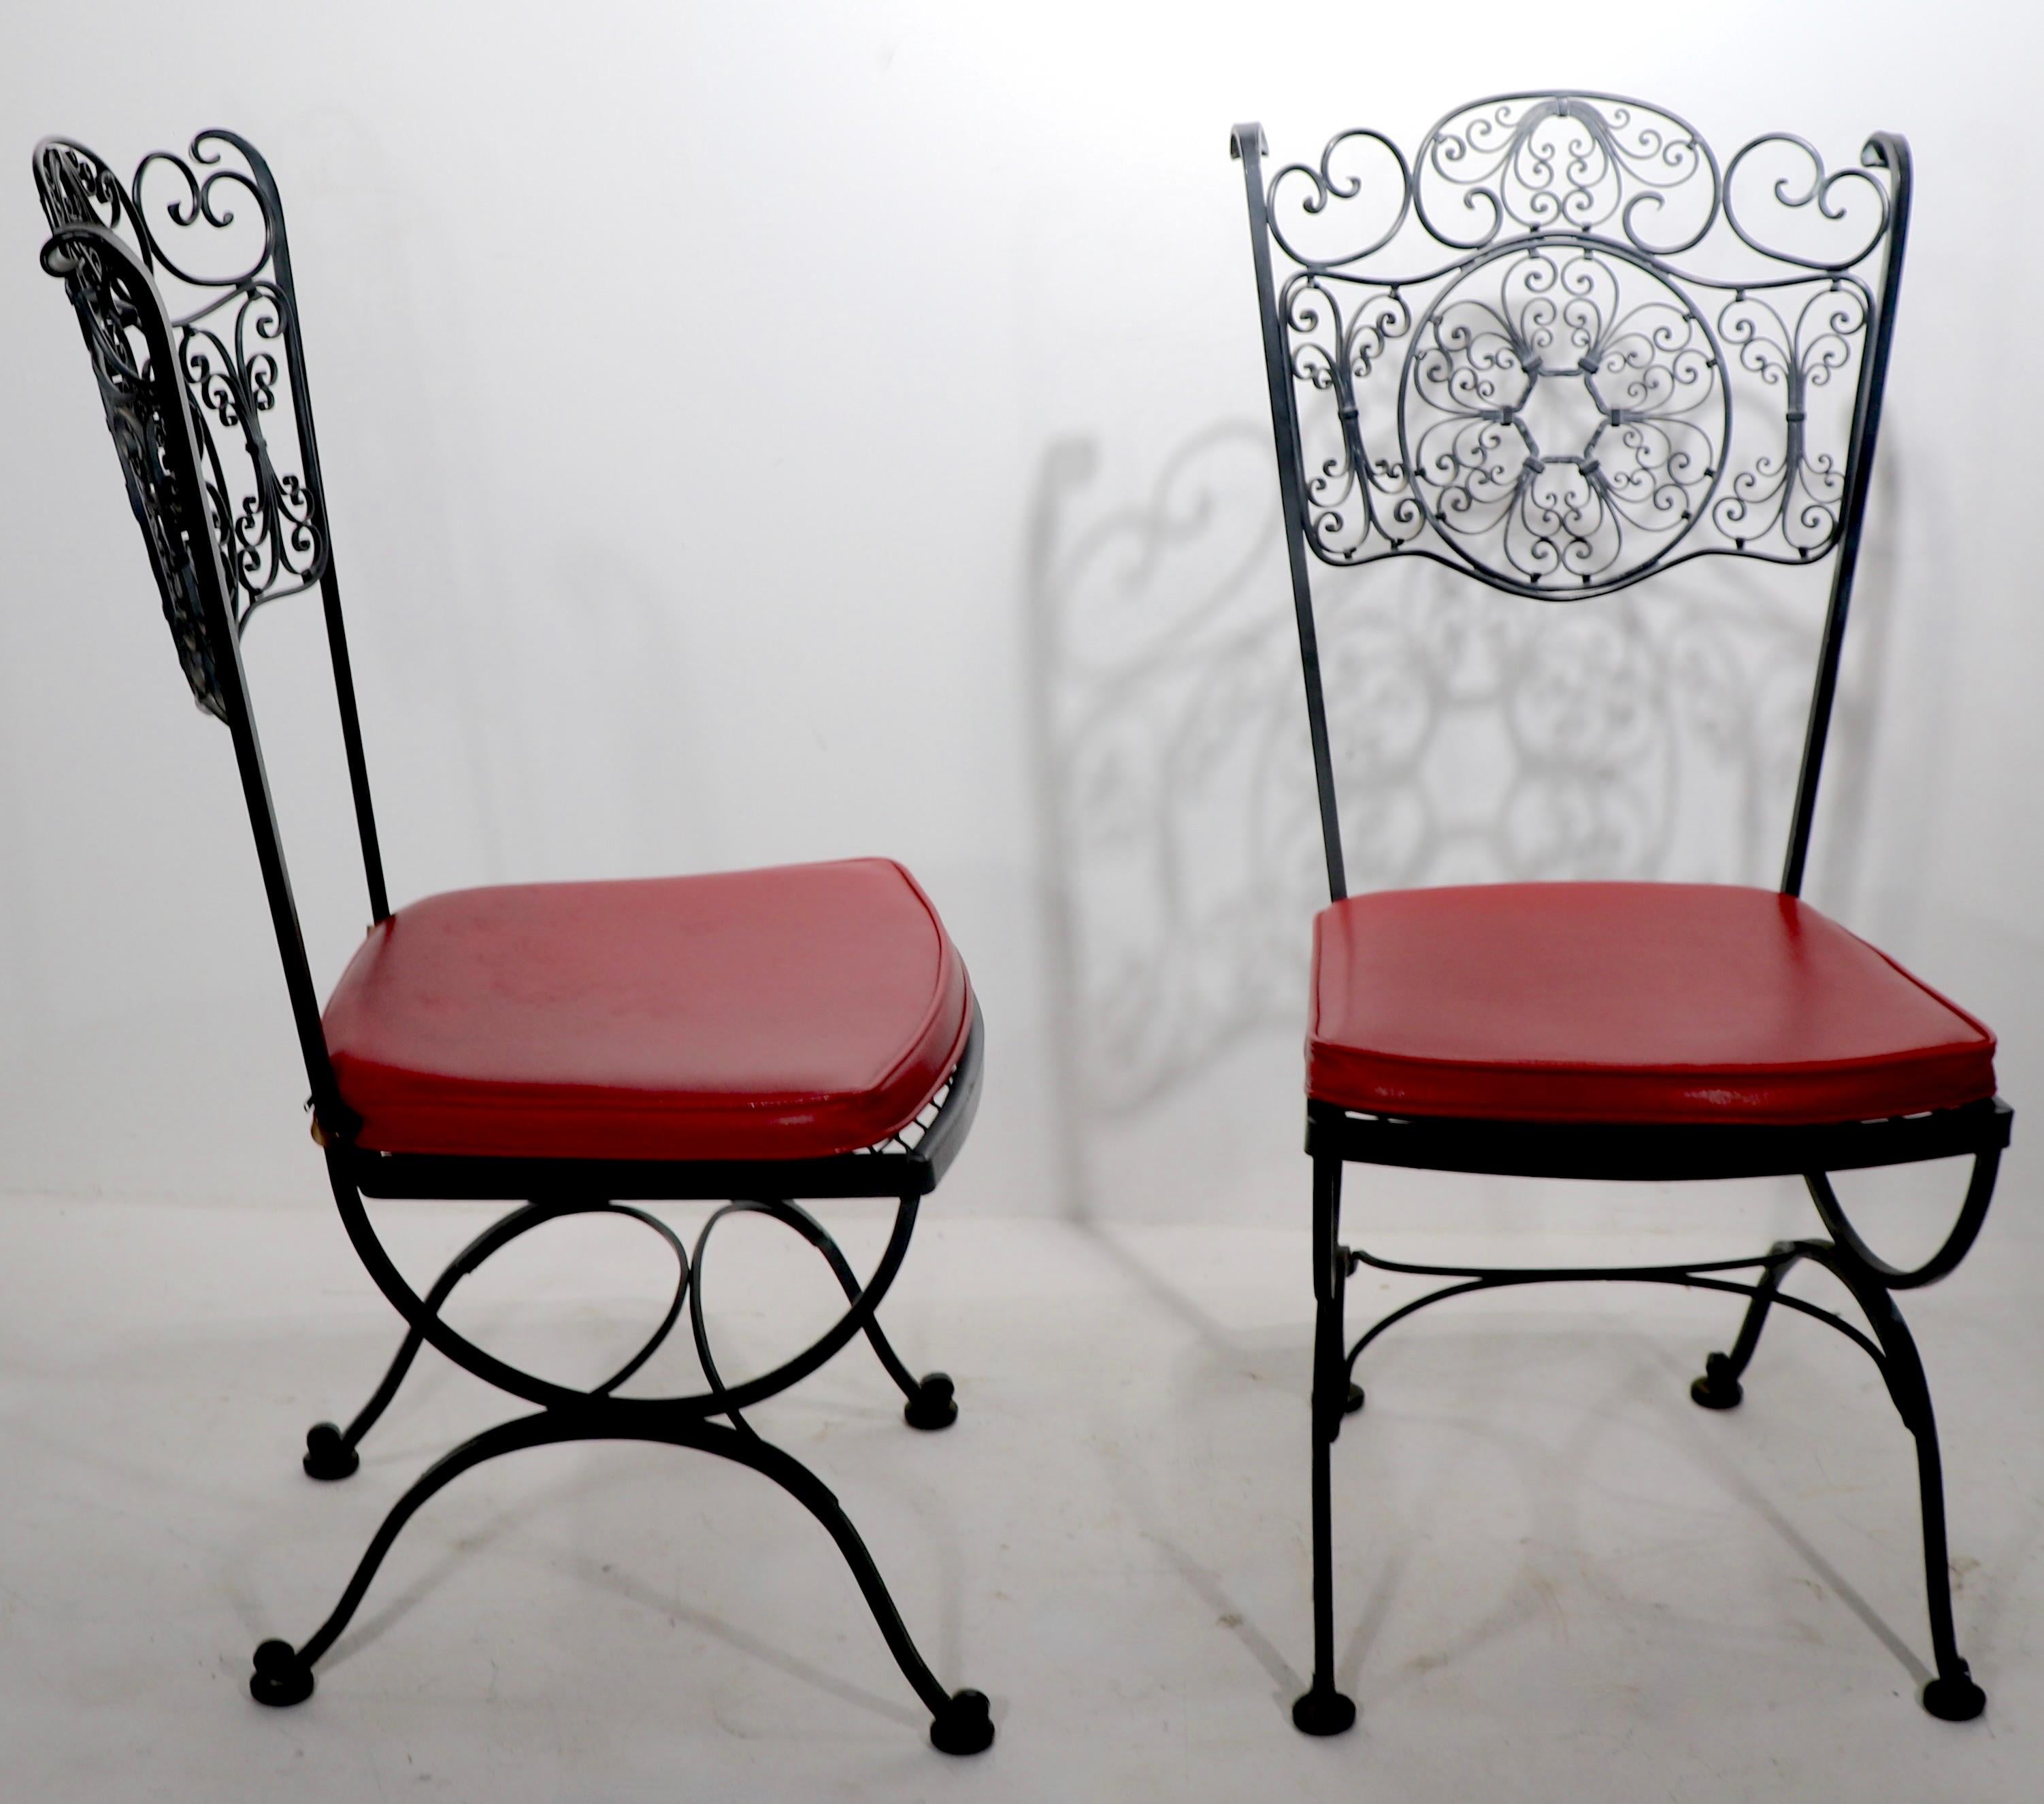 Paire de chaises de salle à manger en fer forgé orné, avec sièges en vinyle d'origine. Les deux sont en très bon état, prêts à l'emploi, et conservent les étiquettes Lee Woodard. Proposé et tarifé comme une paire.